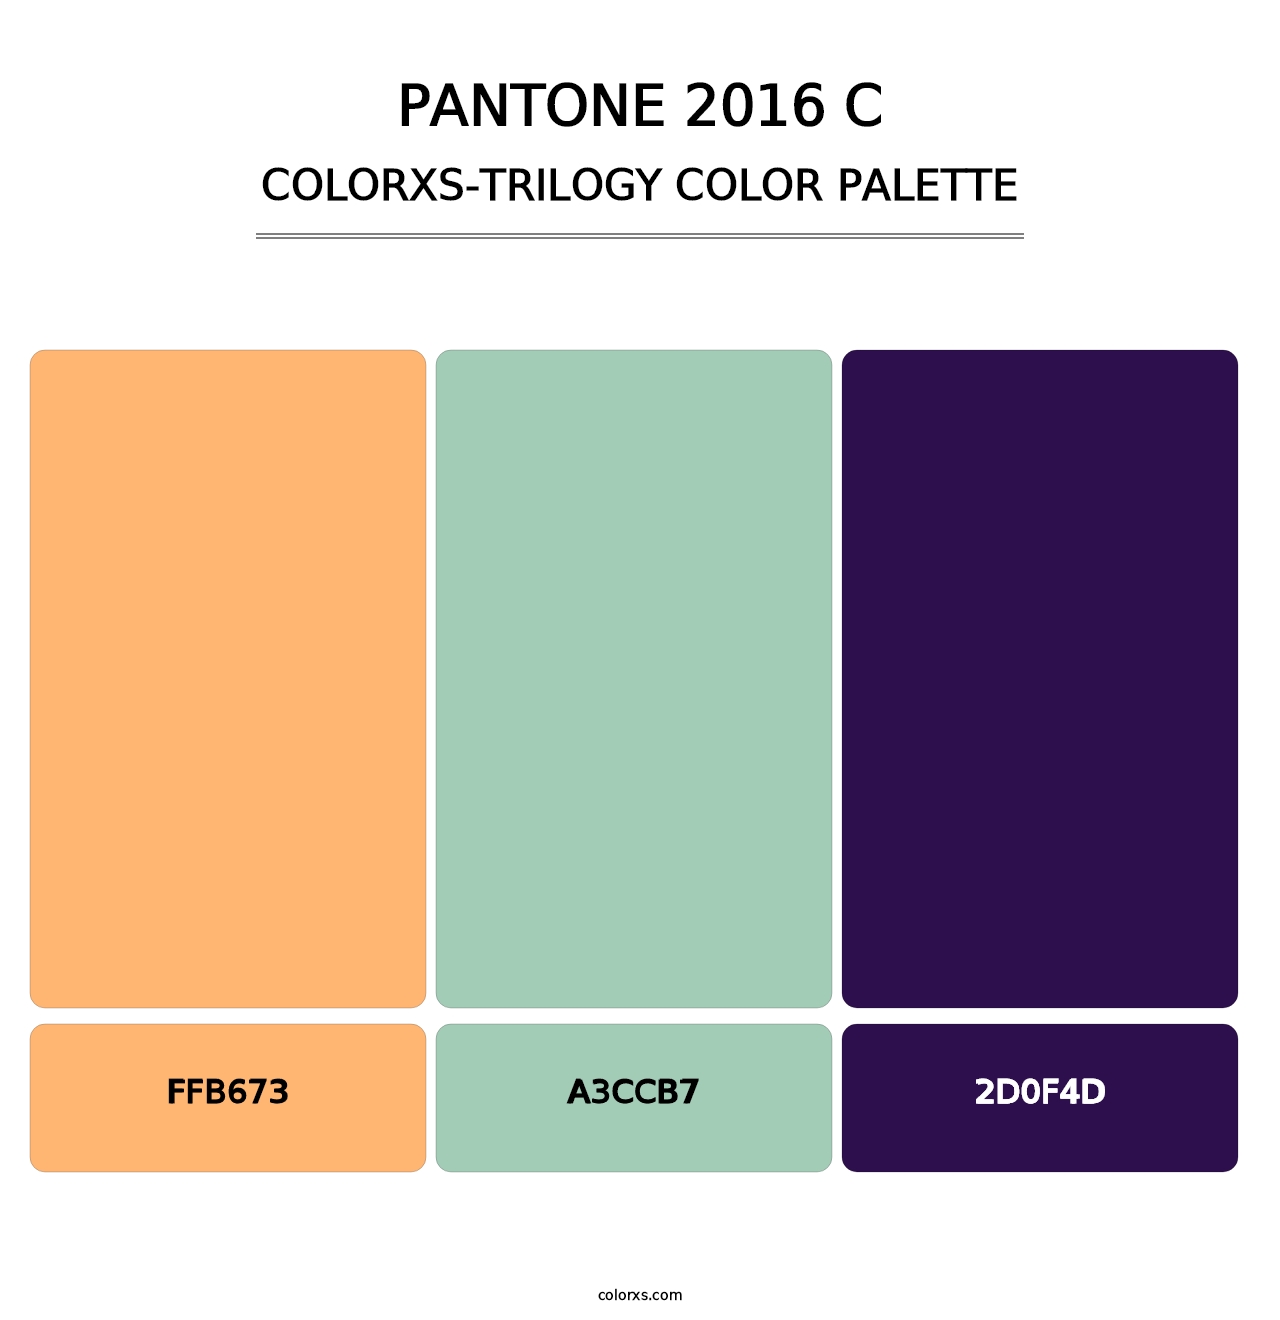 PANTONE 2016 C - Colorxs Trilogy Palette